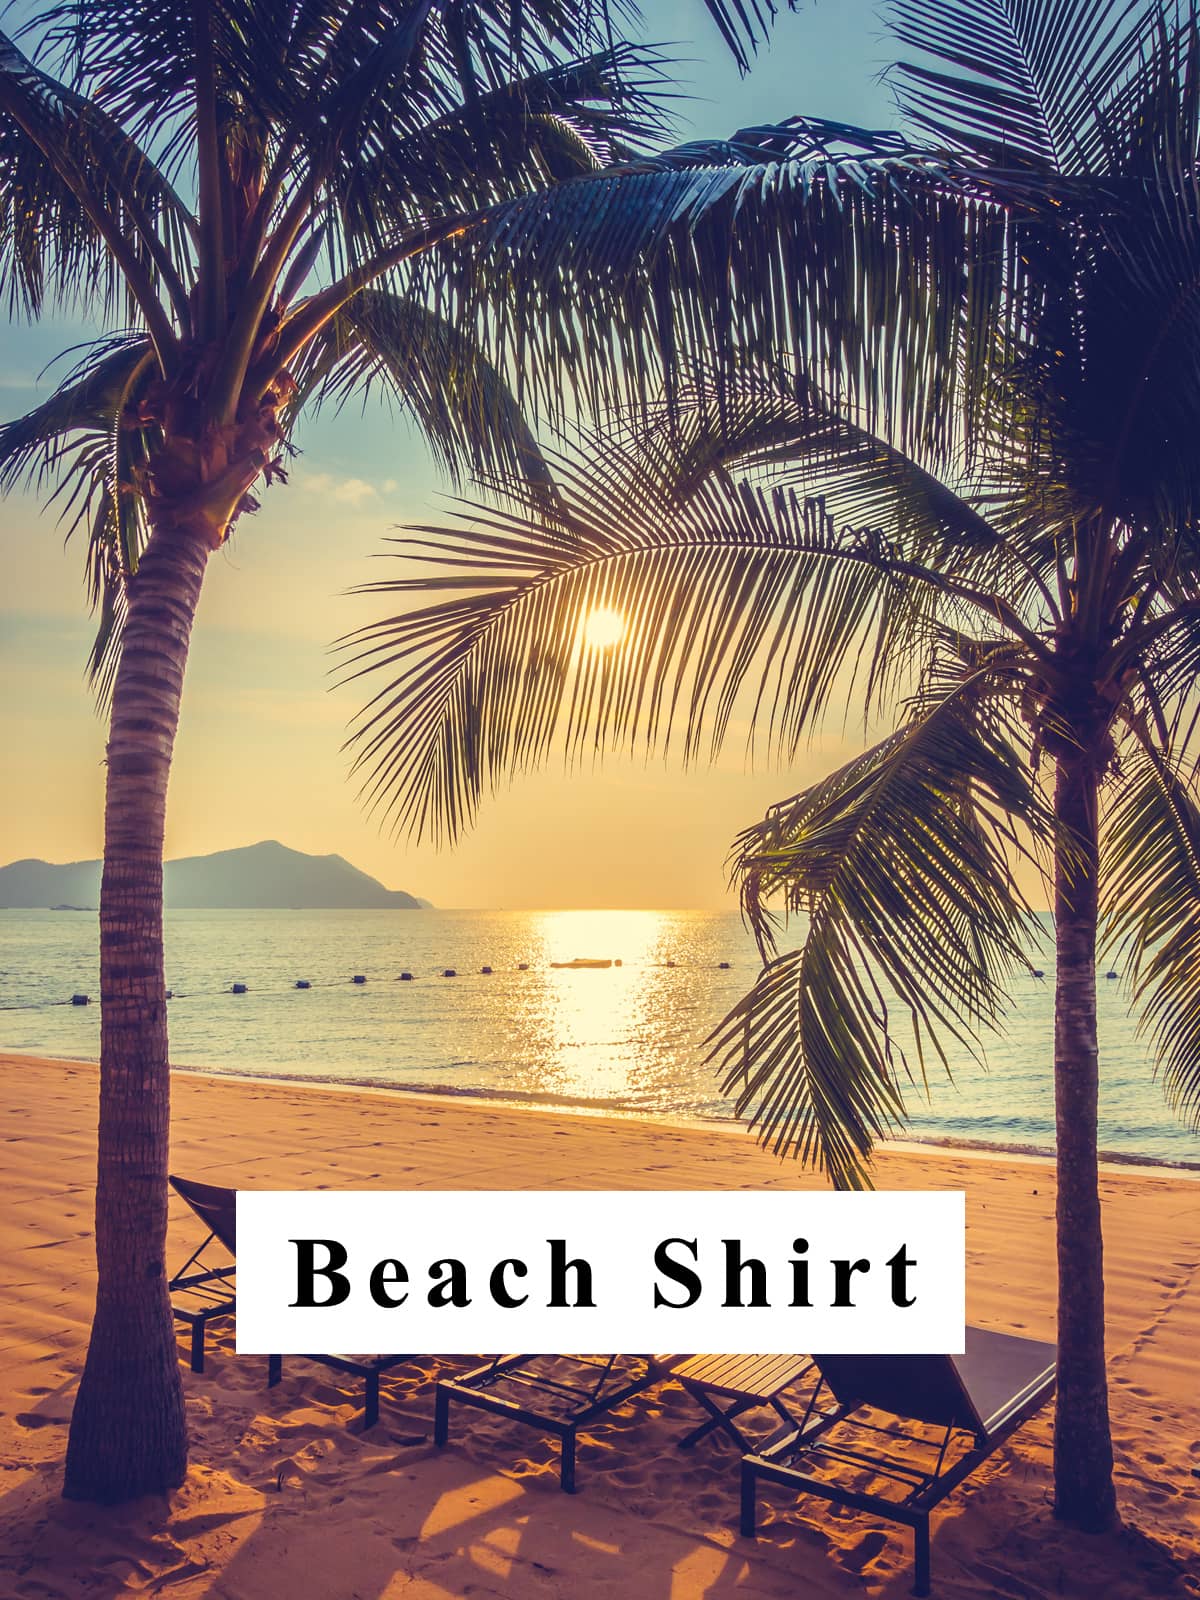 Linen Shirt for Beach